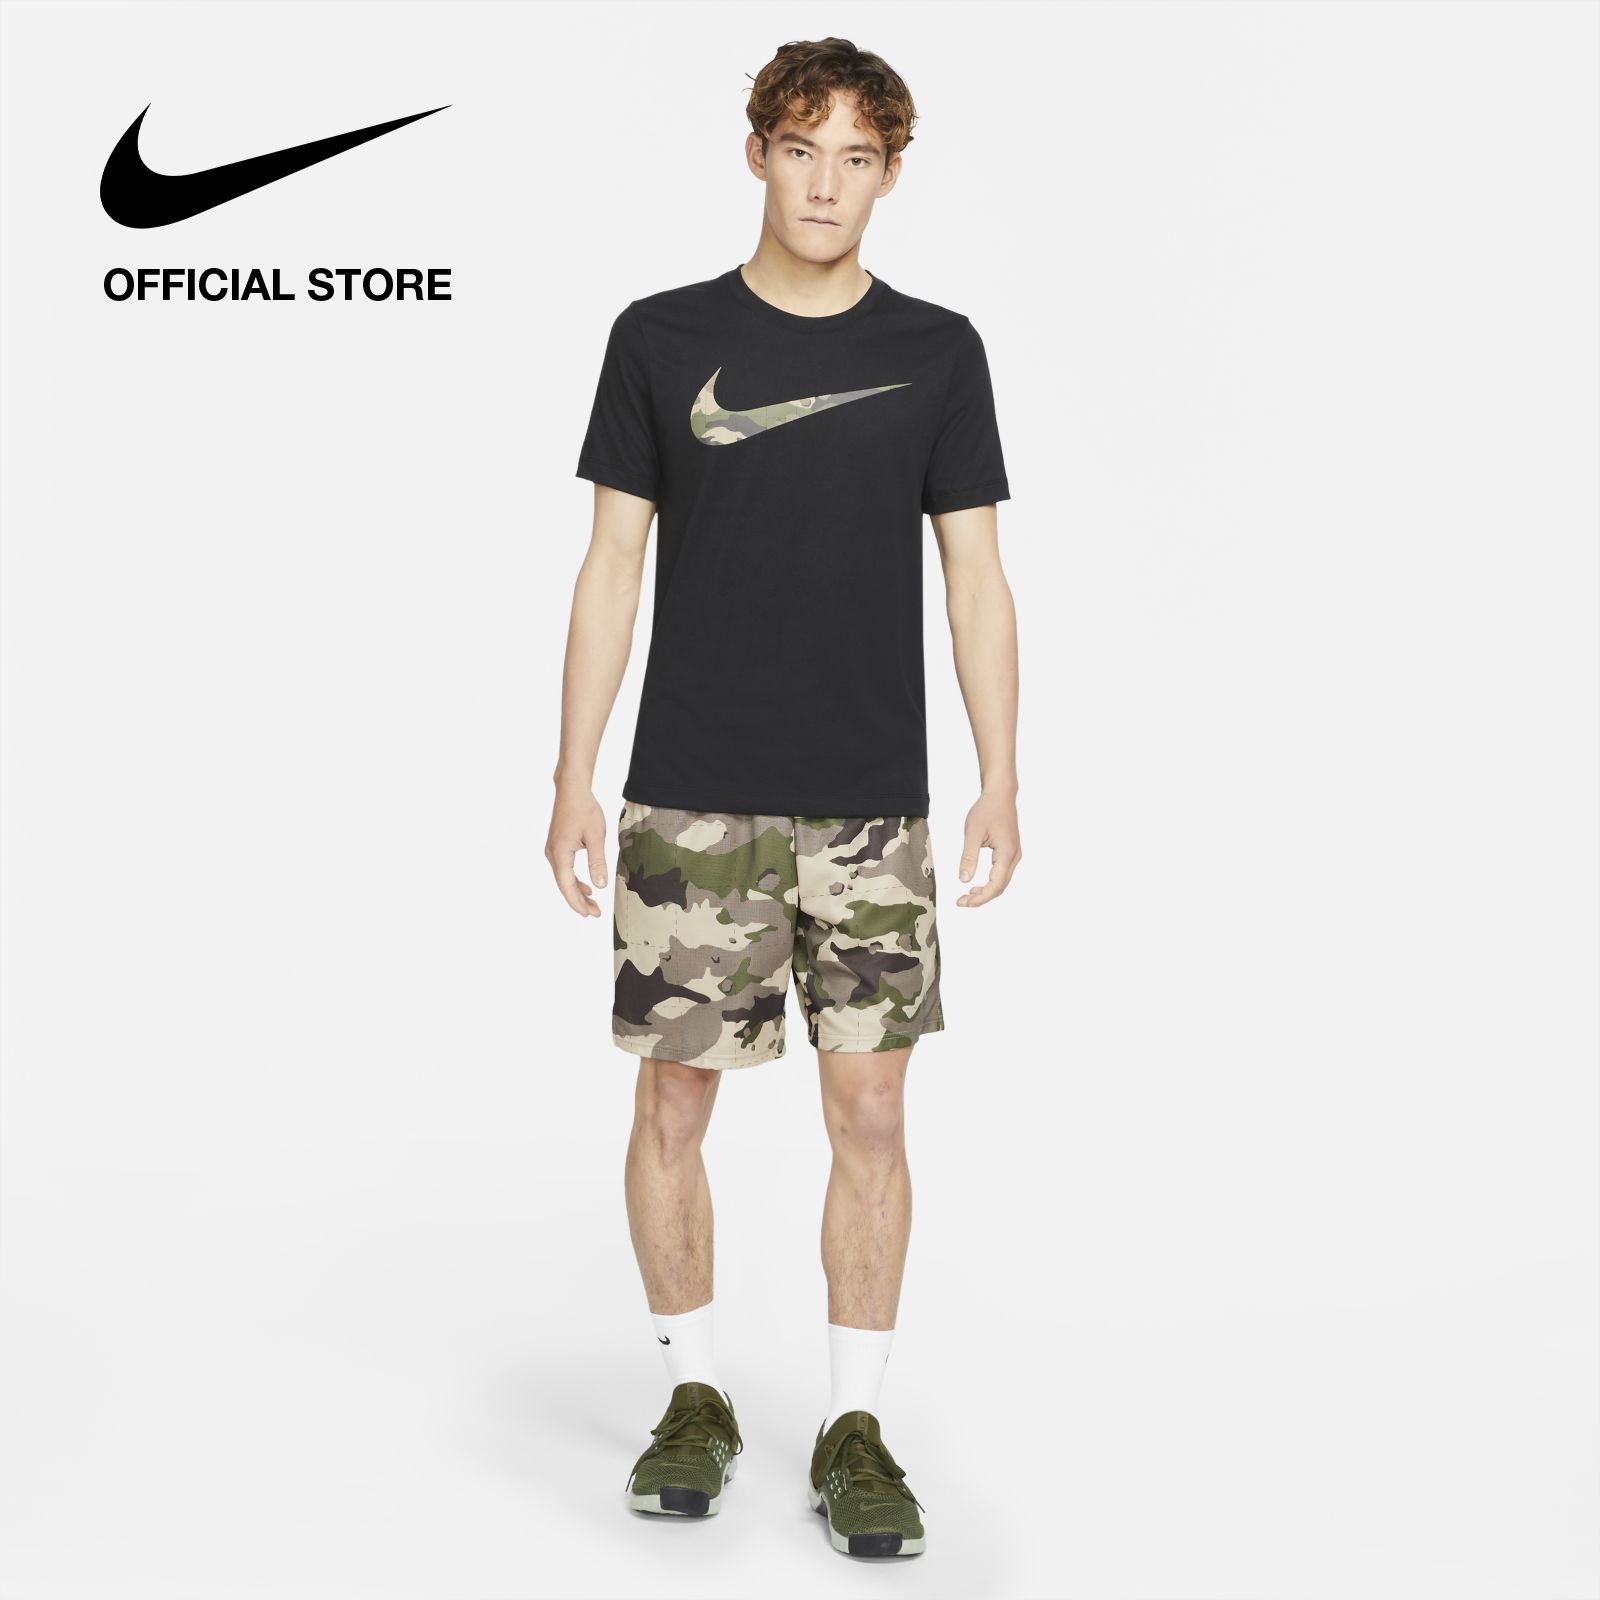 Nike Men's Dri-FIT Graphic Training T-Shirt - Black ไนกี้ เสื้อยืดเทรนนิ่งผู้ชาย มีลายกราฟิก ดรายฟิต - สีดำ